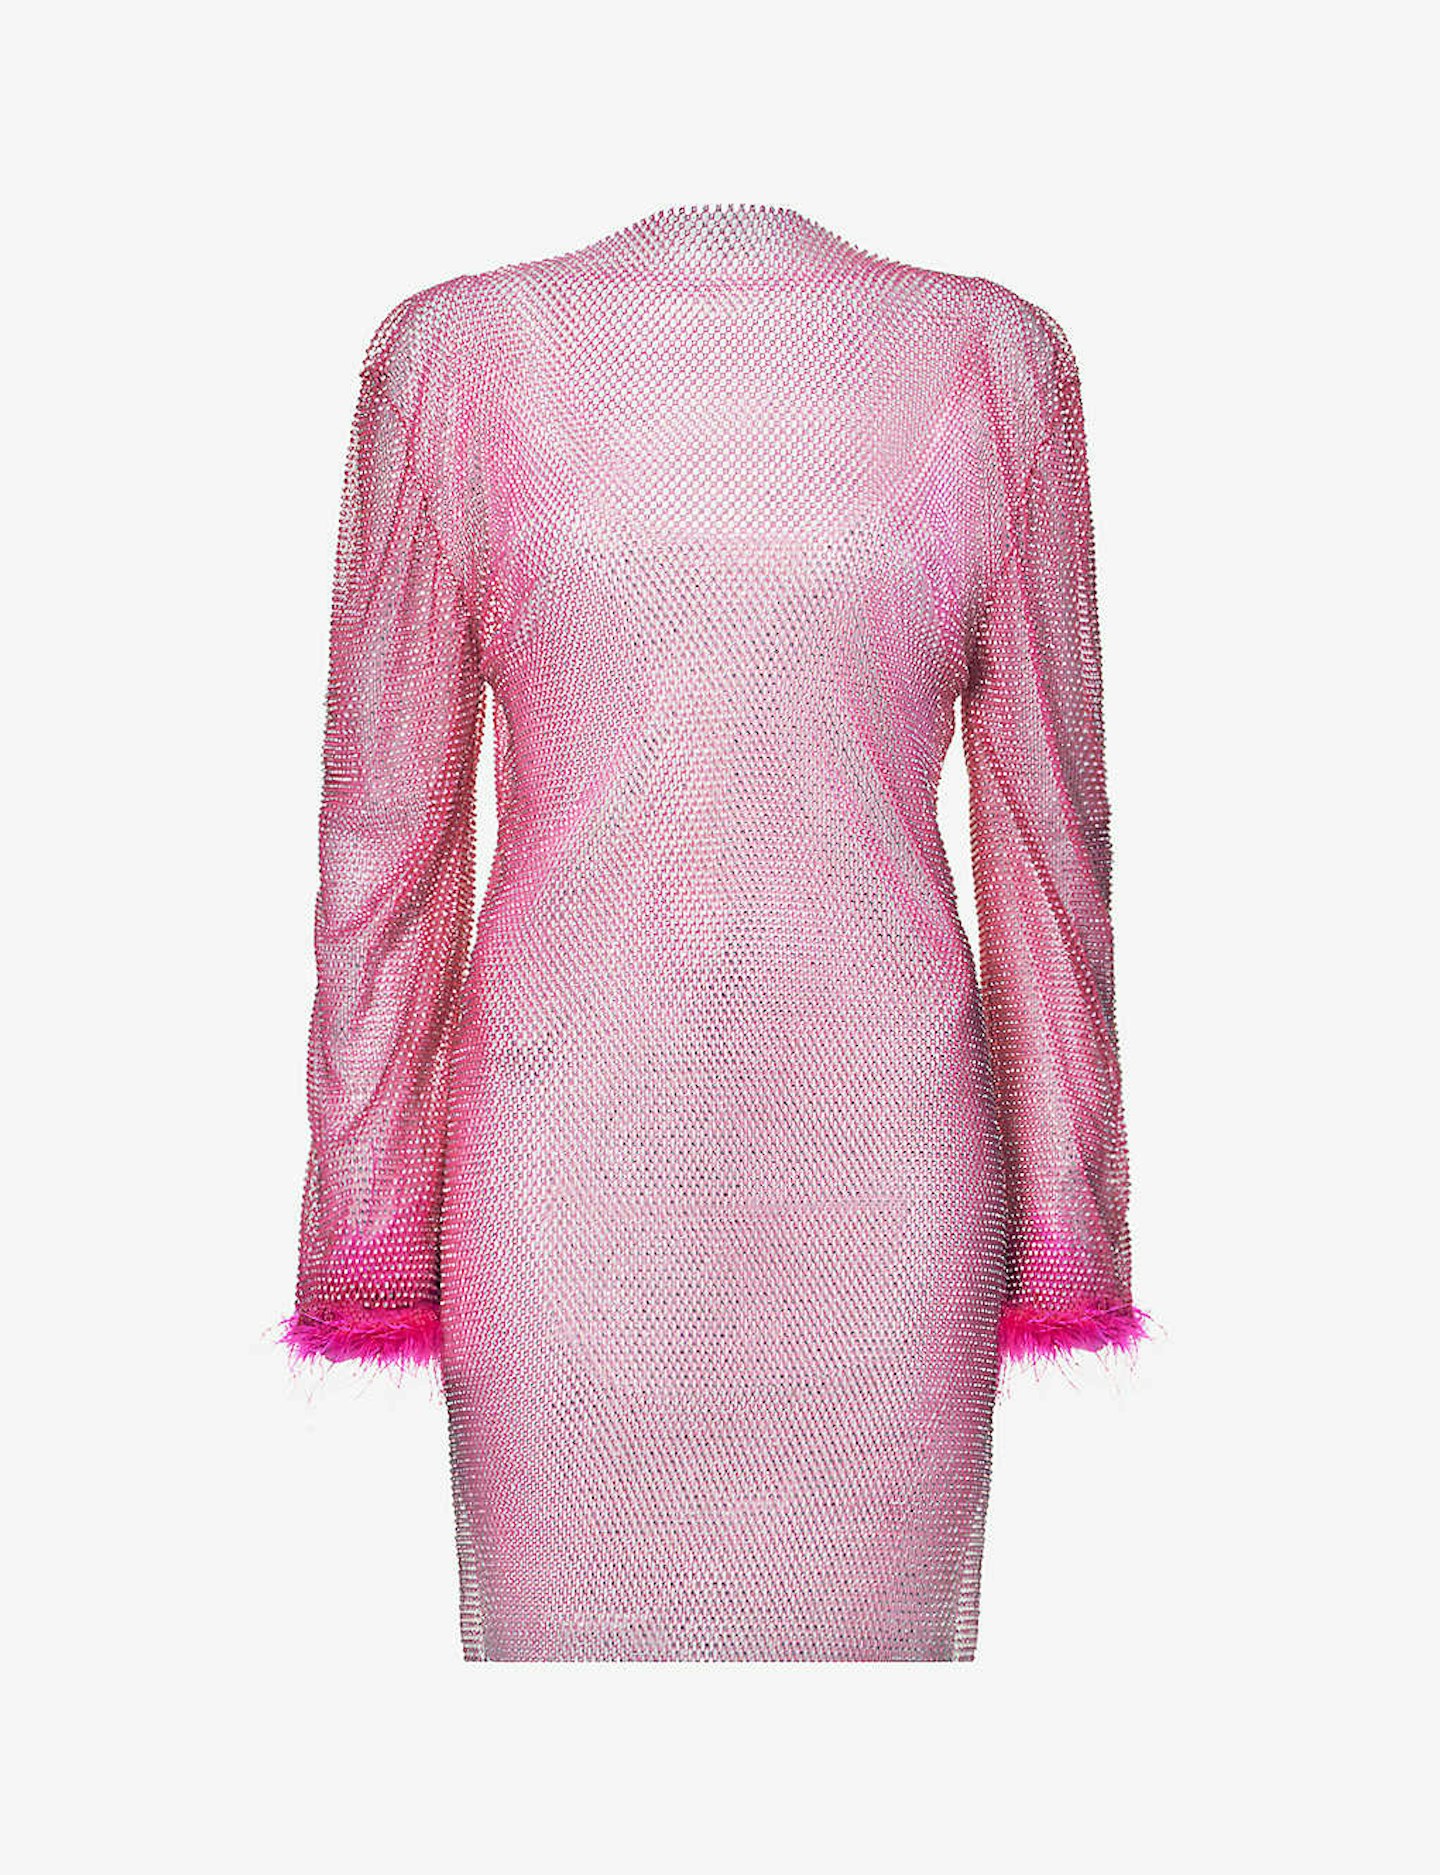 Paris Hilton Is an Elle Woods Look-Alike in a Hot-Pink Fur Trim Skirt Suit  in Paris